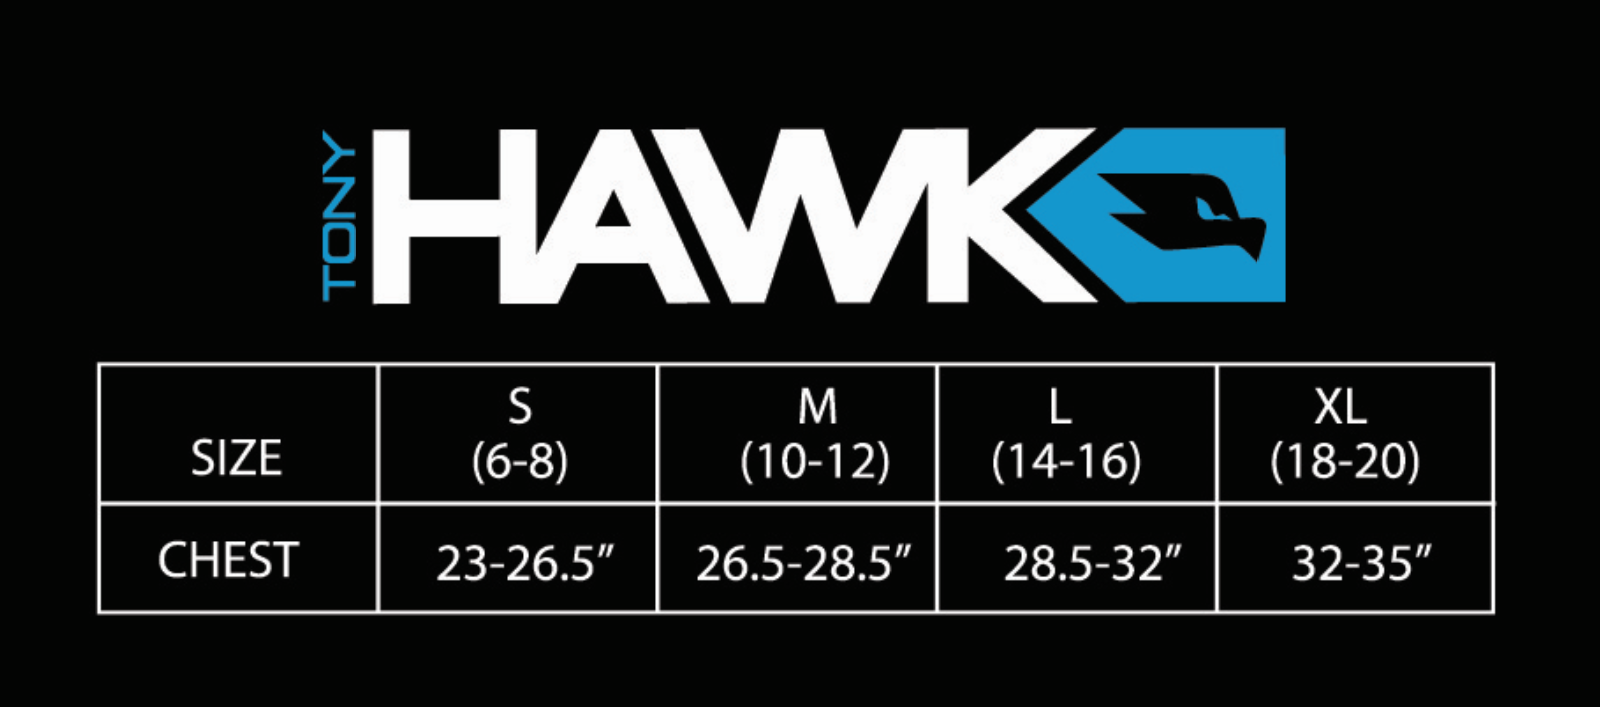 Tony Hawk Boys Undershirts, 6 Pack V-Neck Undershirts Sizes 6 - 20 - image 2 of 2